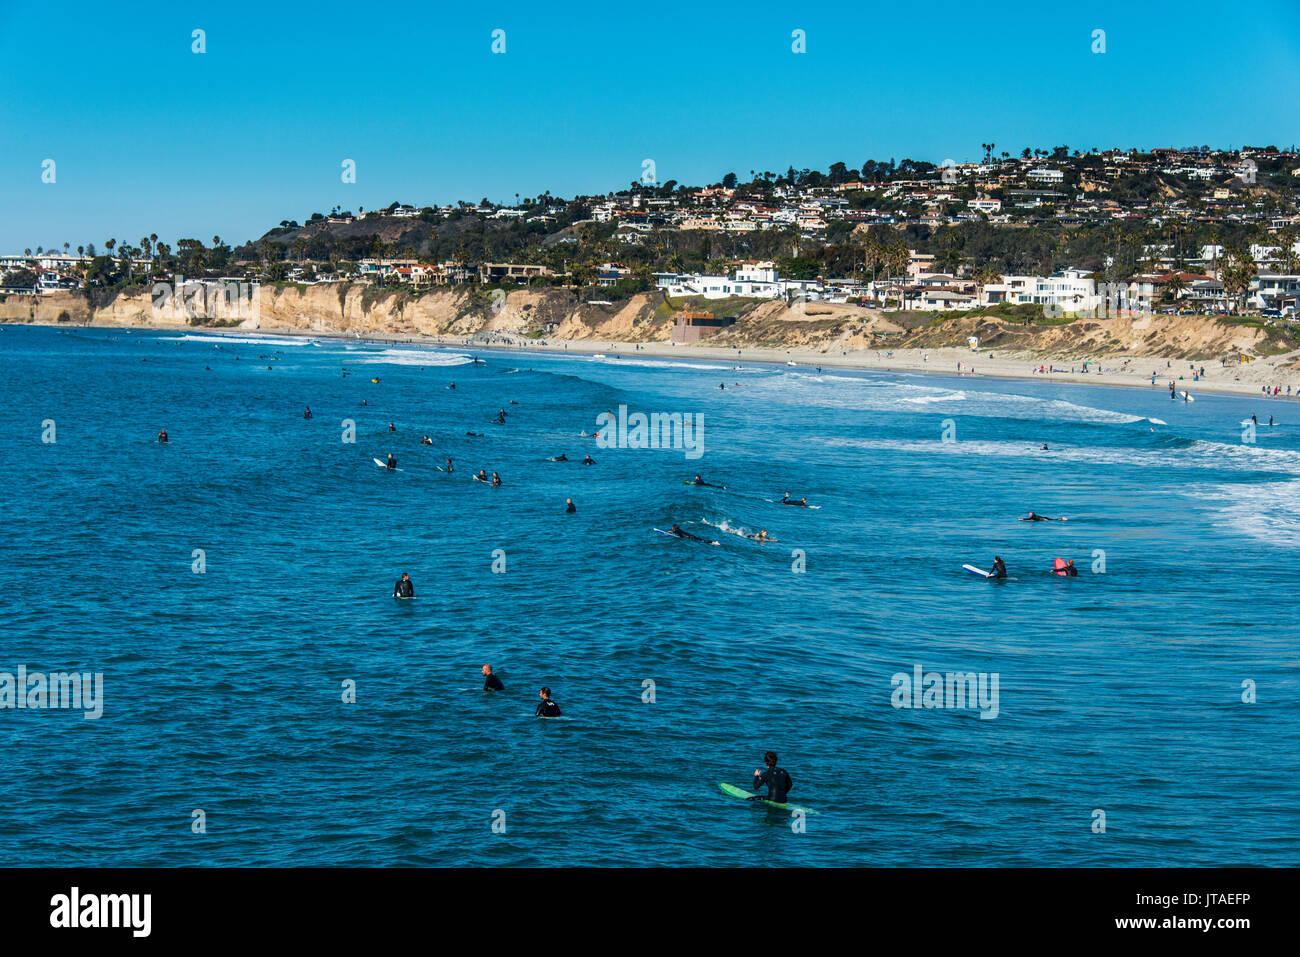 Les surfeurs en attente dans les eaux de La Jolla pour la prochaine grande vague, en Californie, États-Unis d'Amérique, Amérique du Nord Banque D'Images